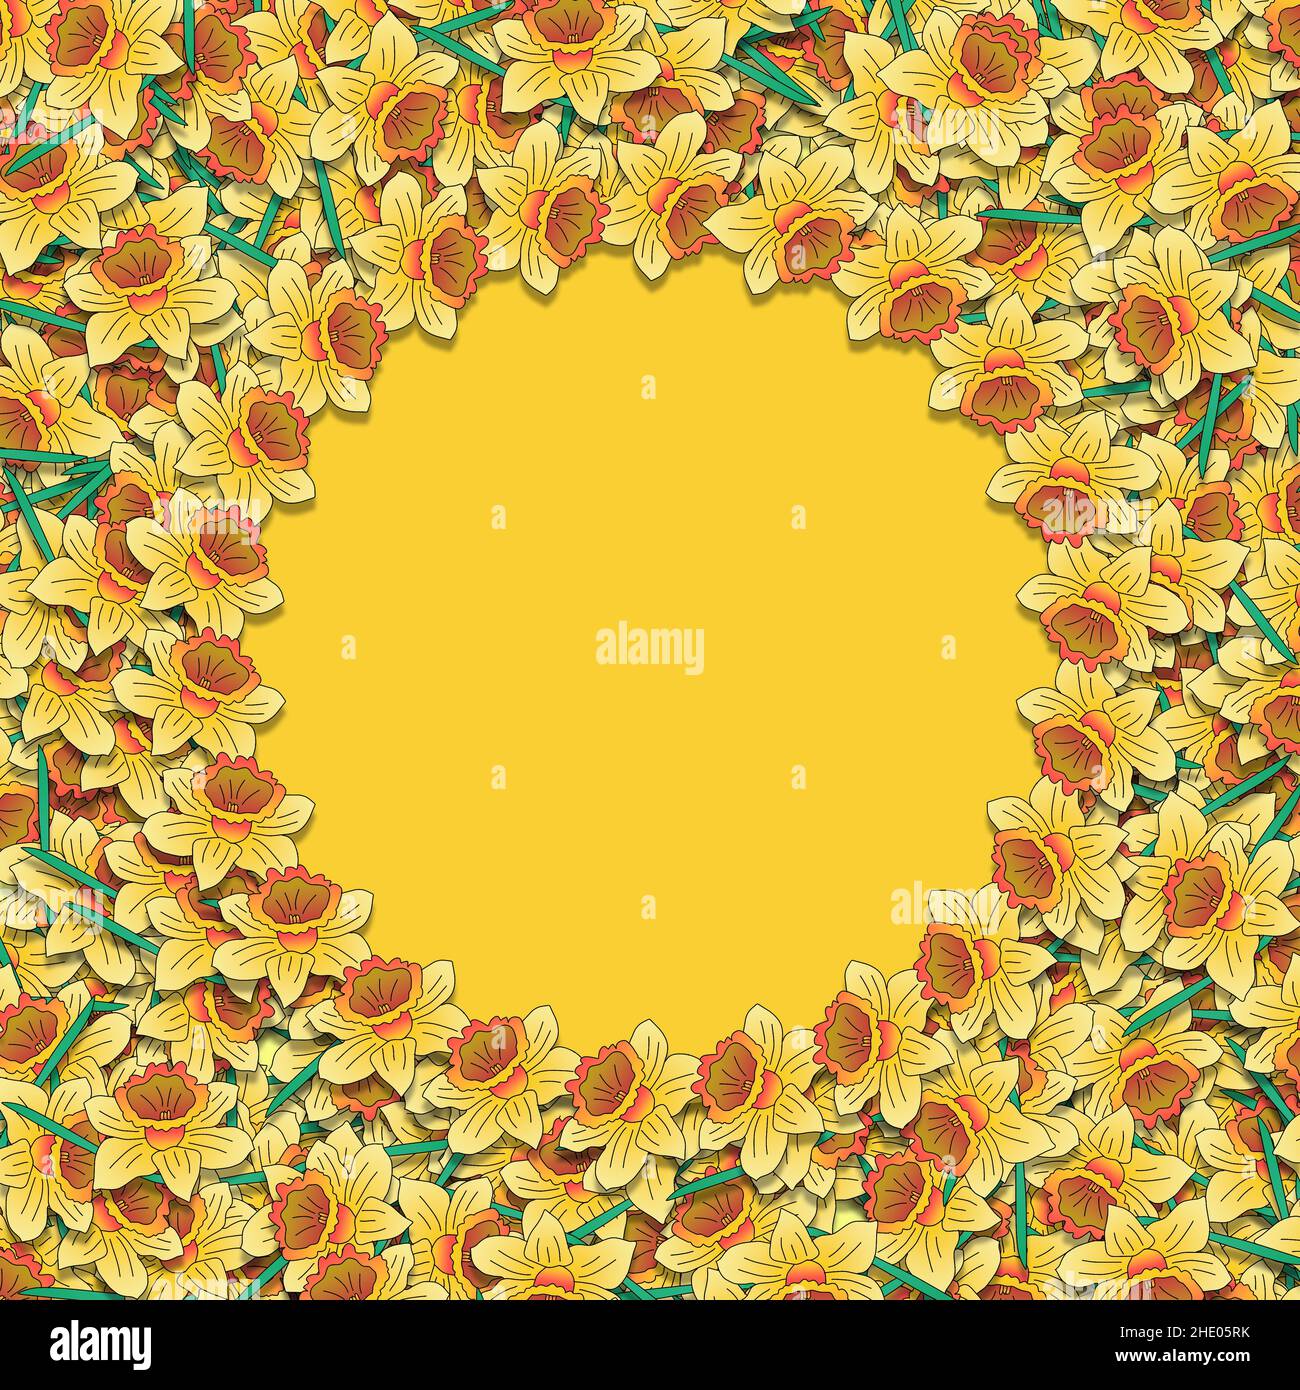 Illustrazione di sfondo floreale di una massa di fiori colorati di naffodil bordo su uno sfondo giallo con spazio per il testo. Foto Stock